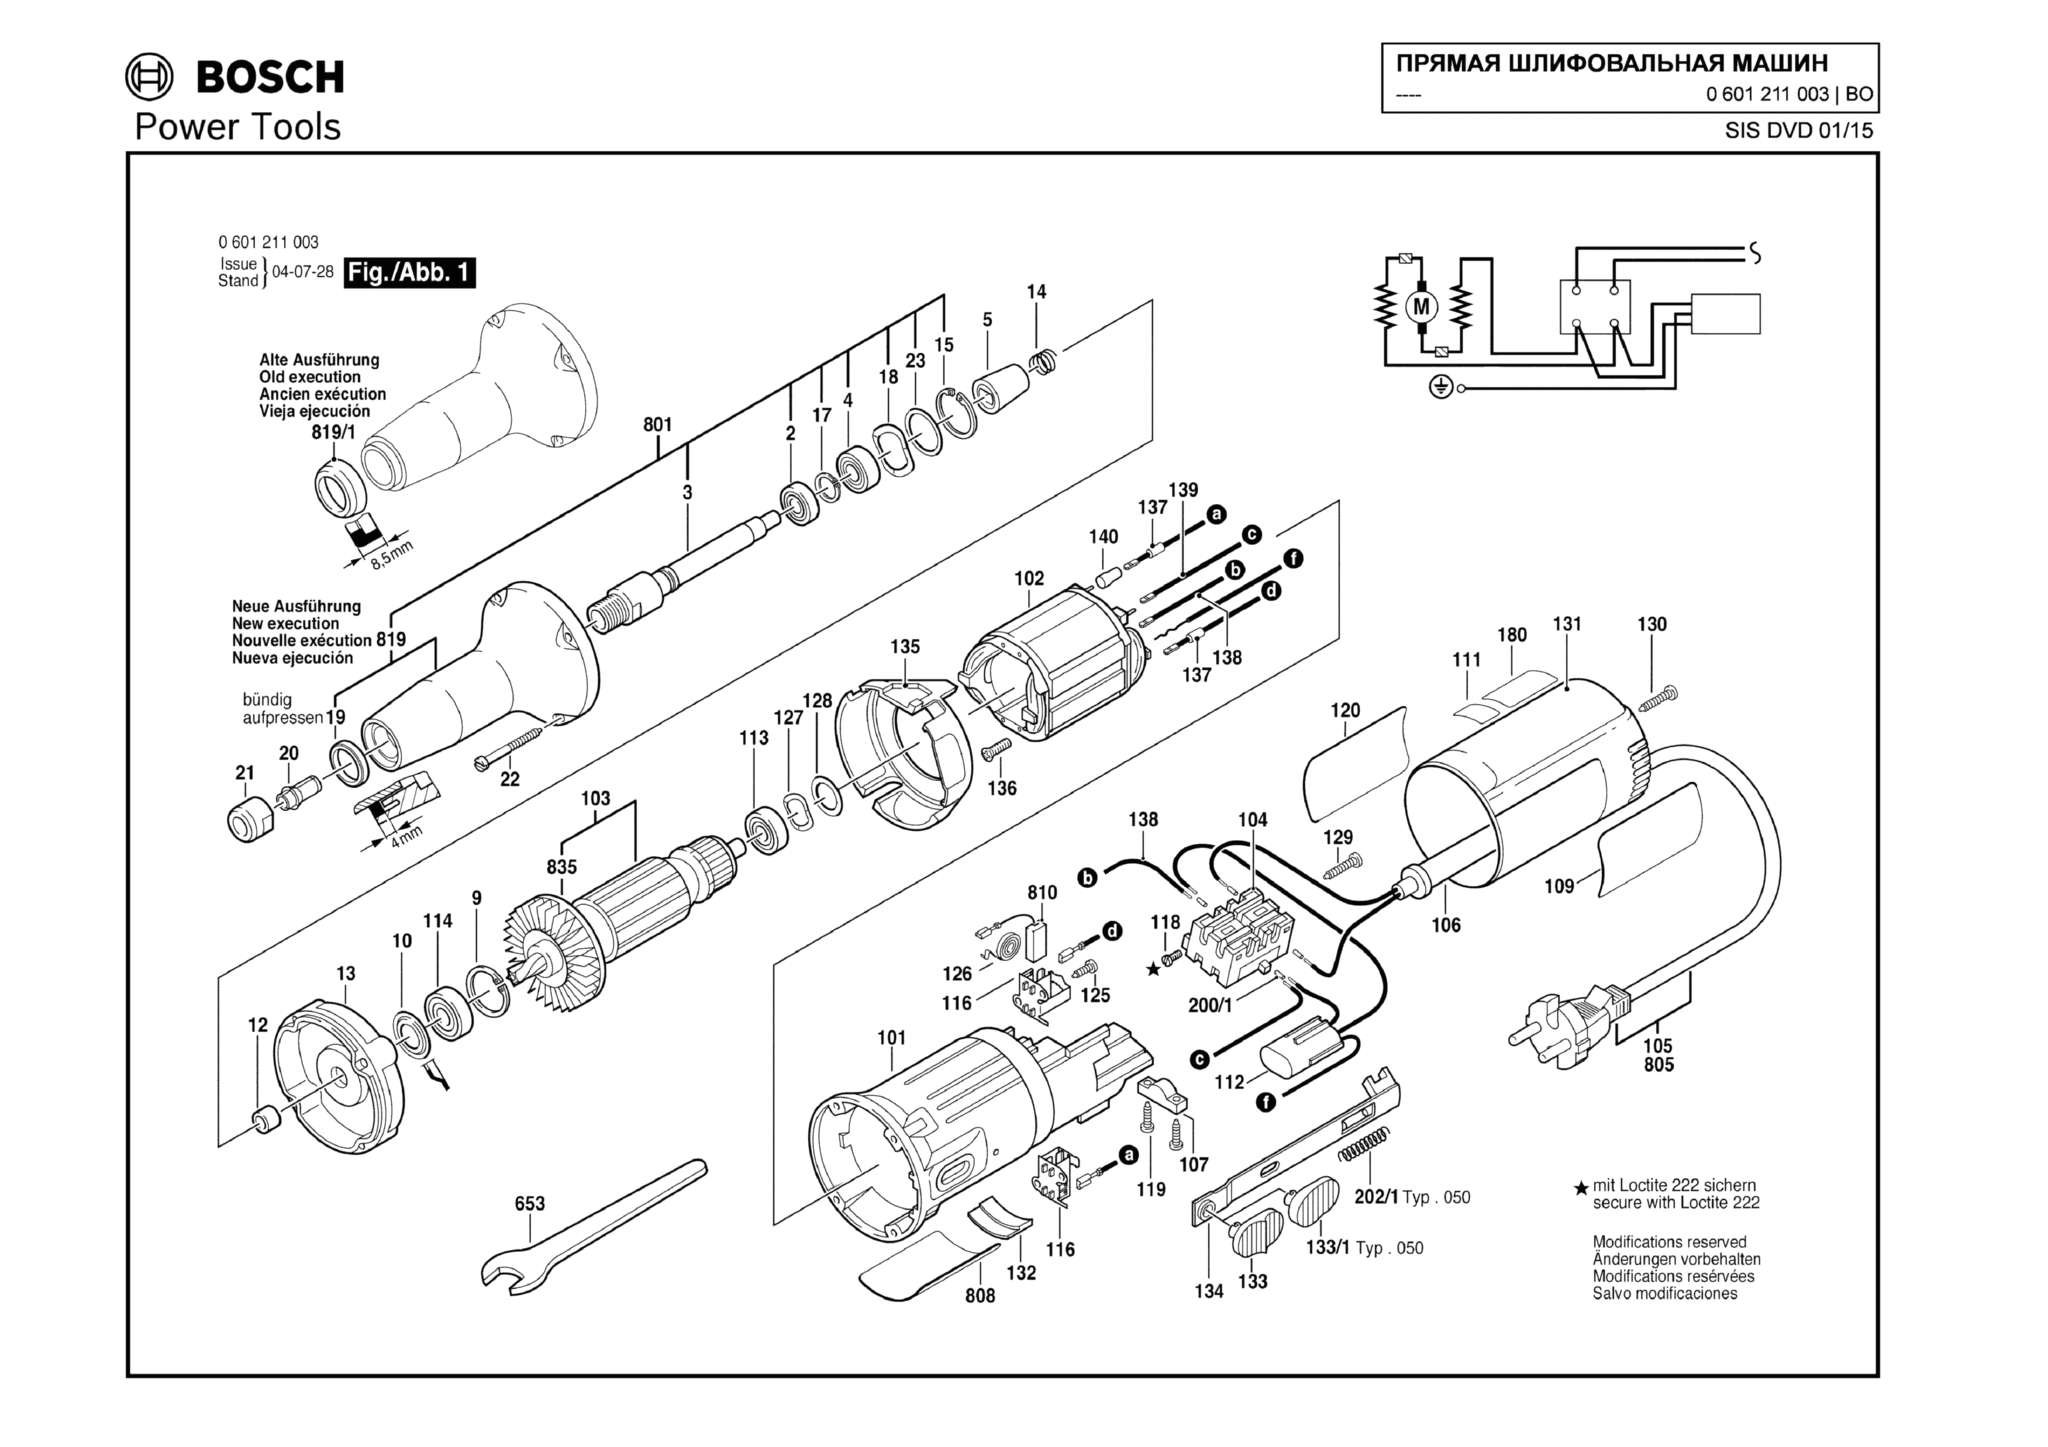 Запчасти, схема и деталировка Bosch (ТИП 0601211003)